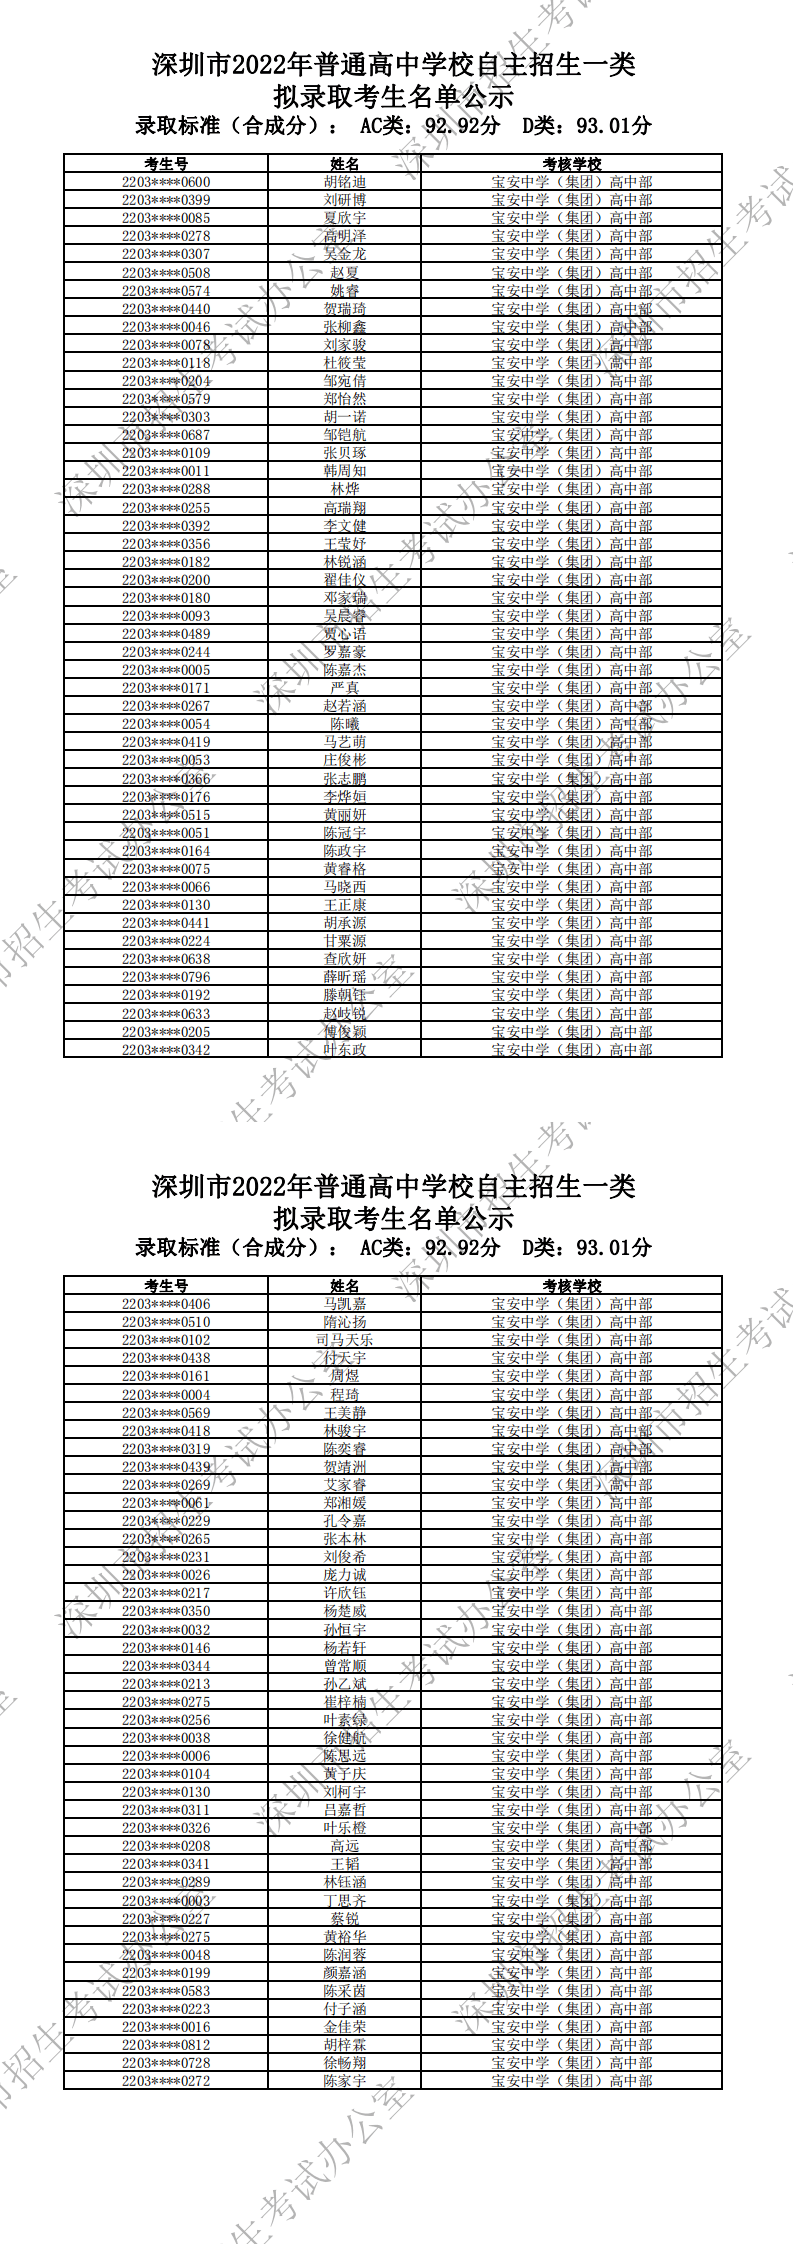 深圳公示普高自主招生拟录取考生名单